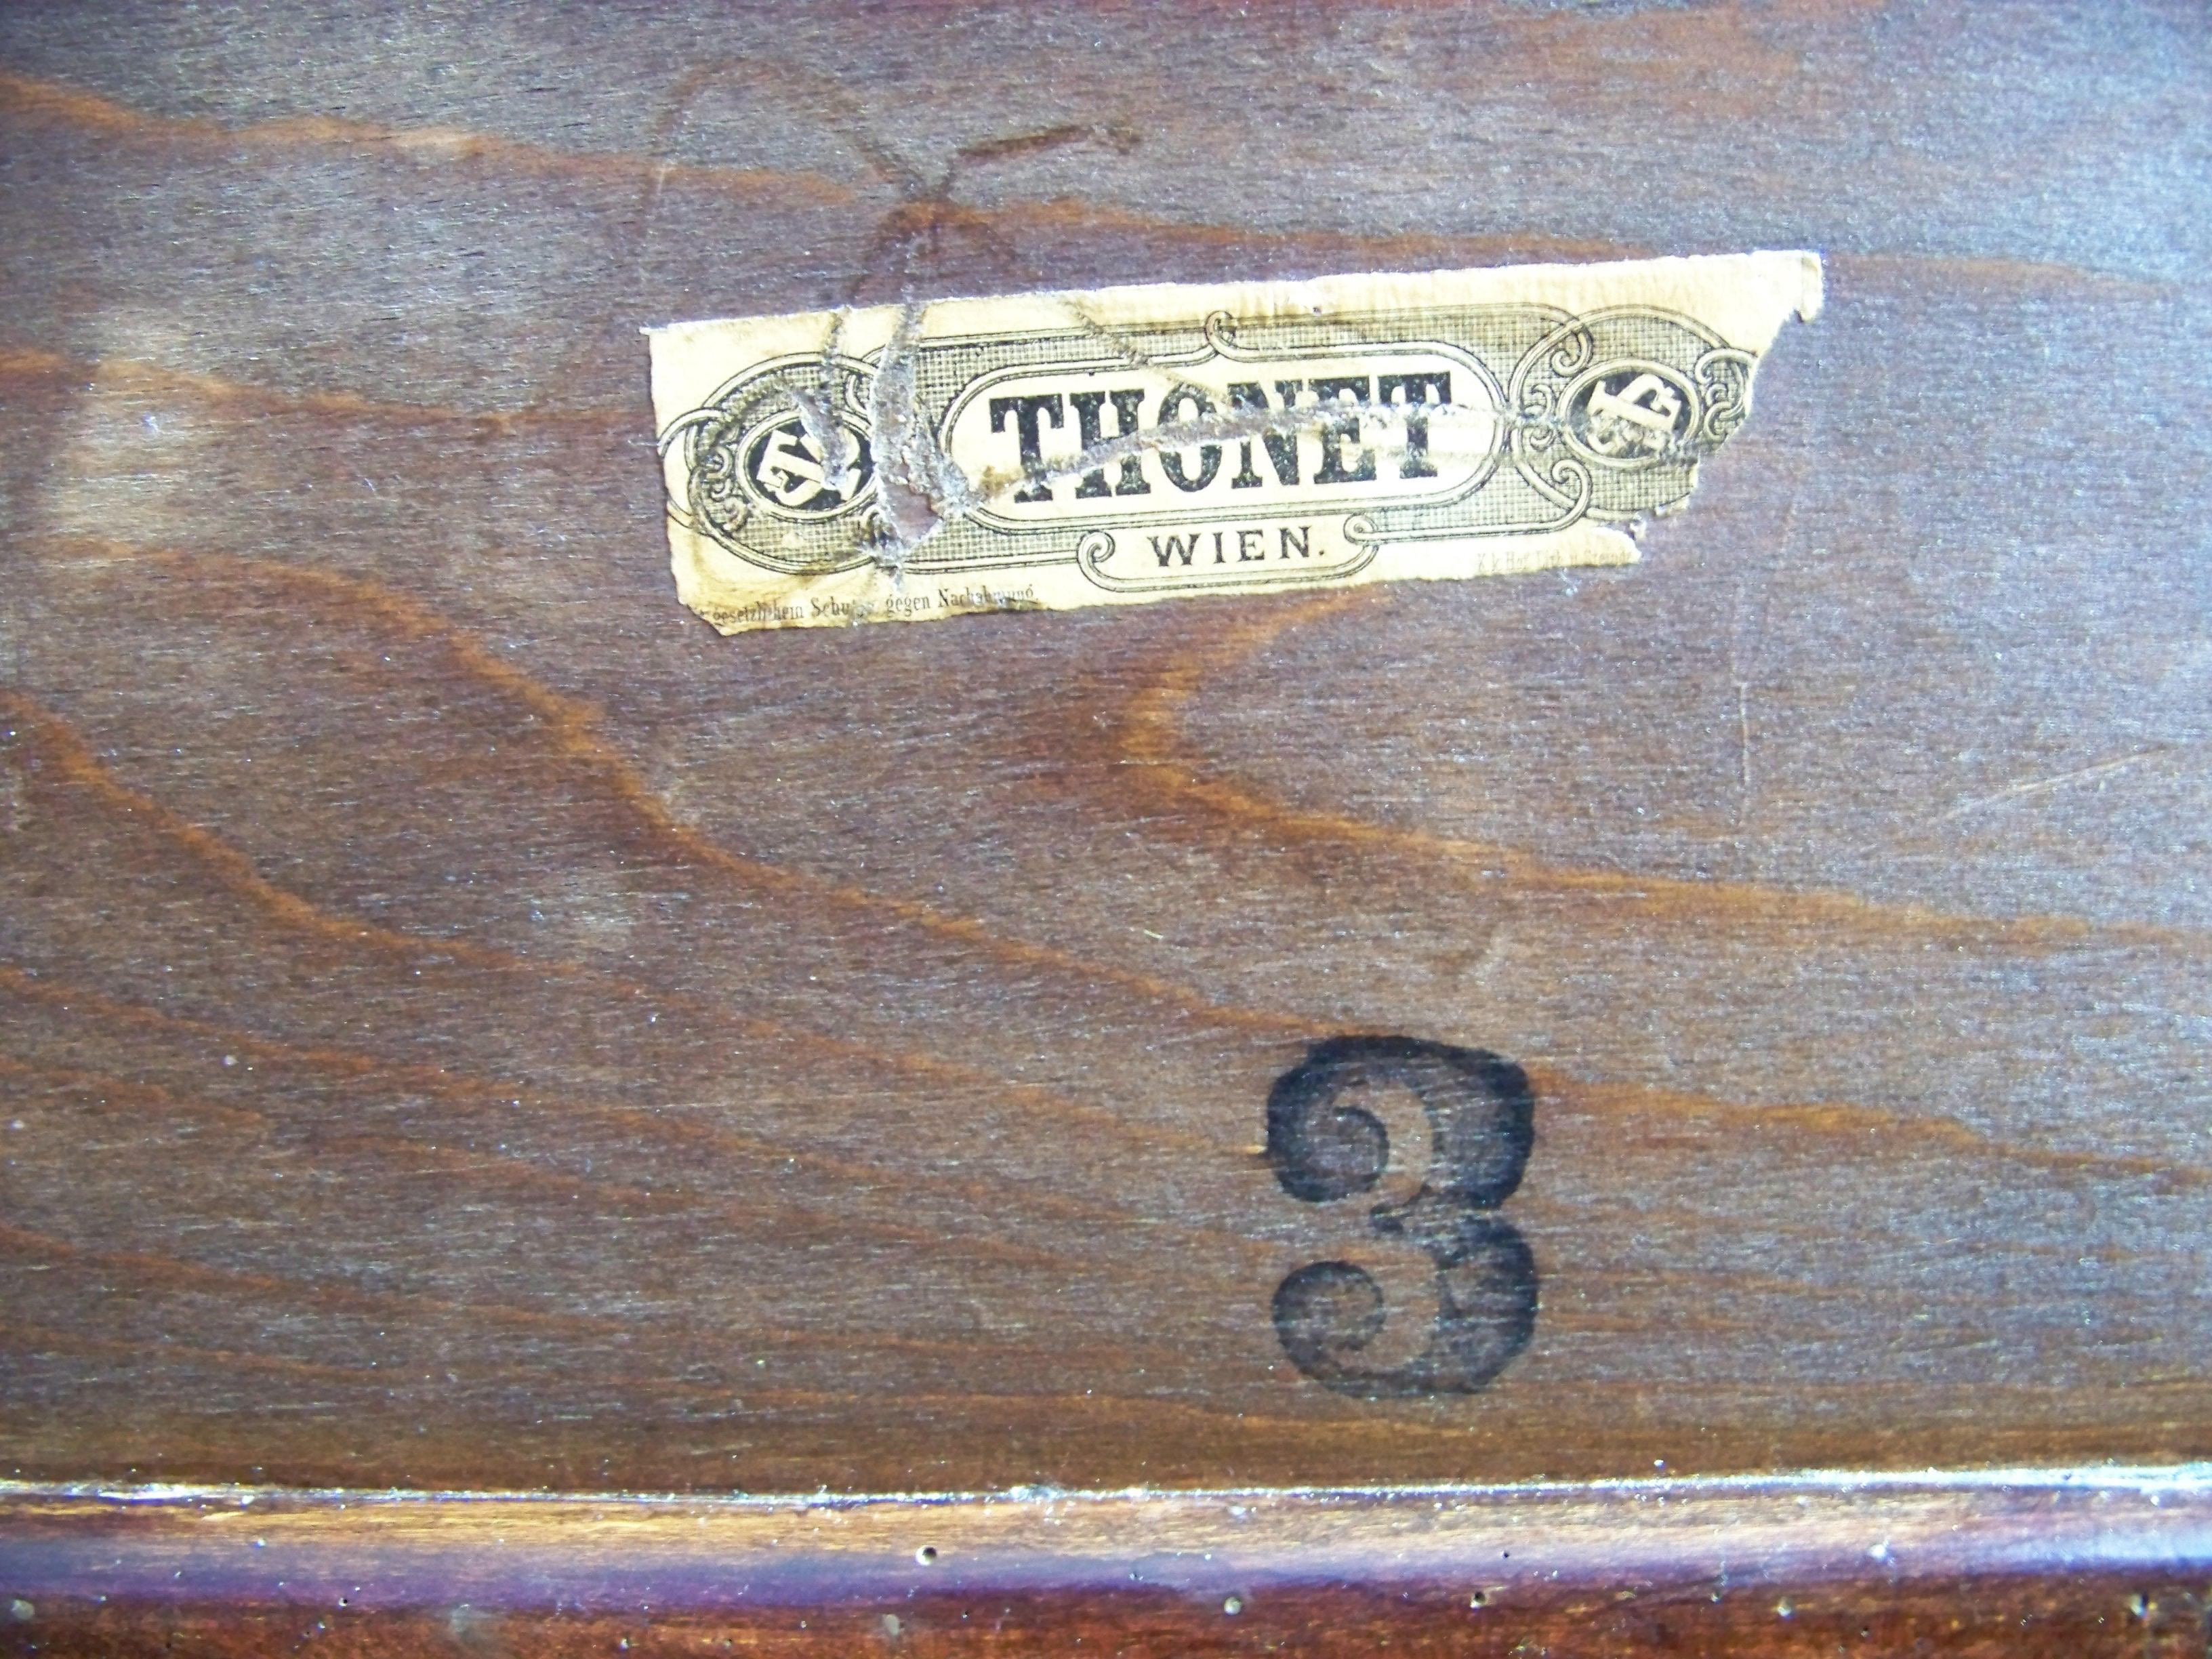 Beech Bedroom Thonet, Garnitur A, Since 1904